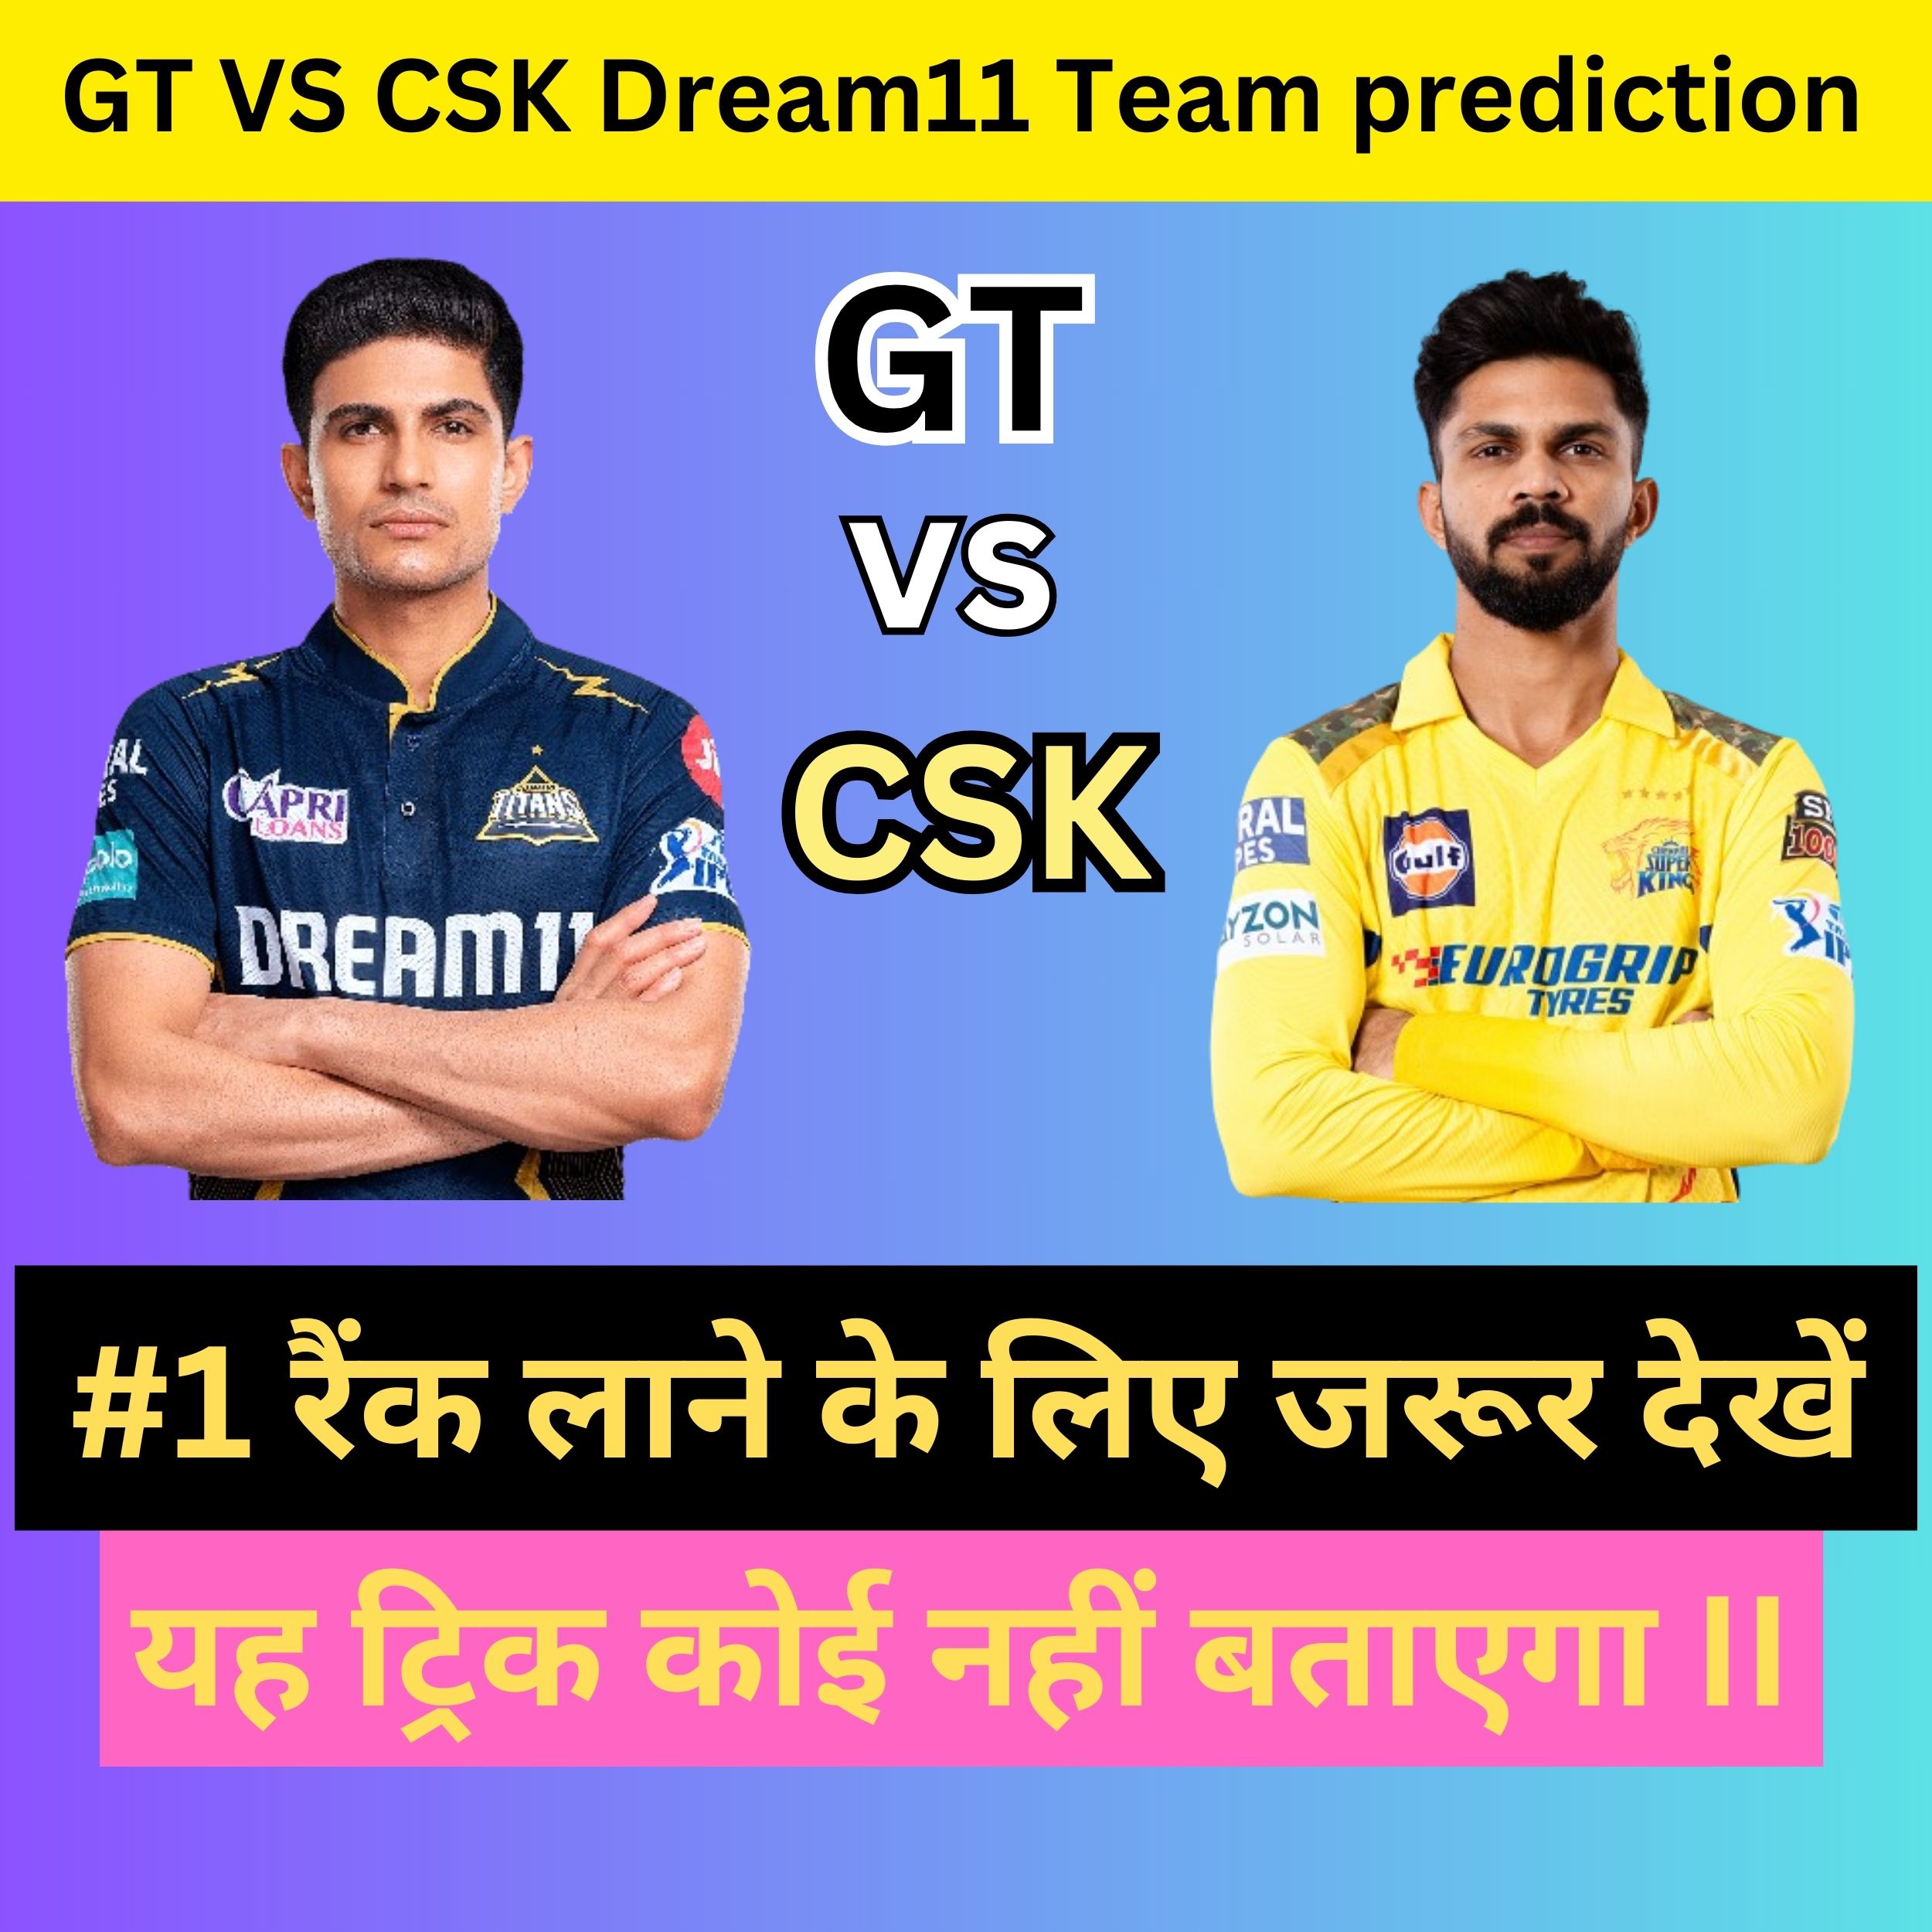 GT VS CSK Dream11 Team prediction